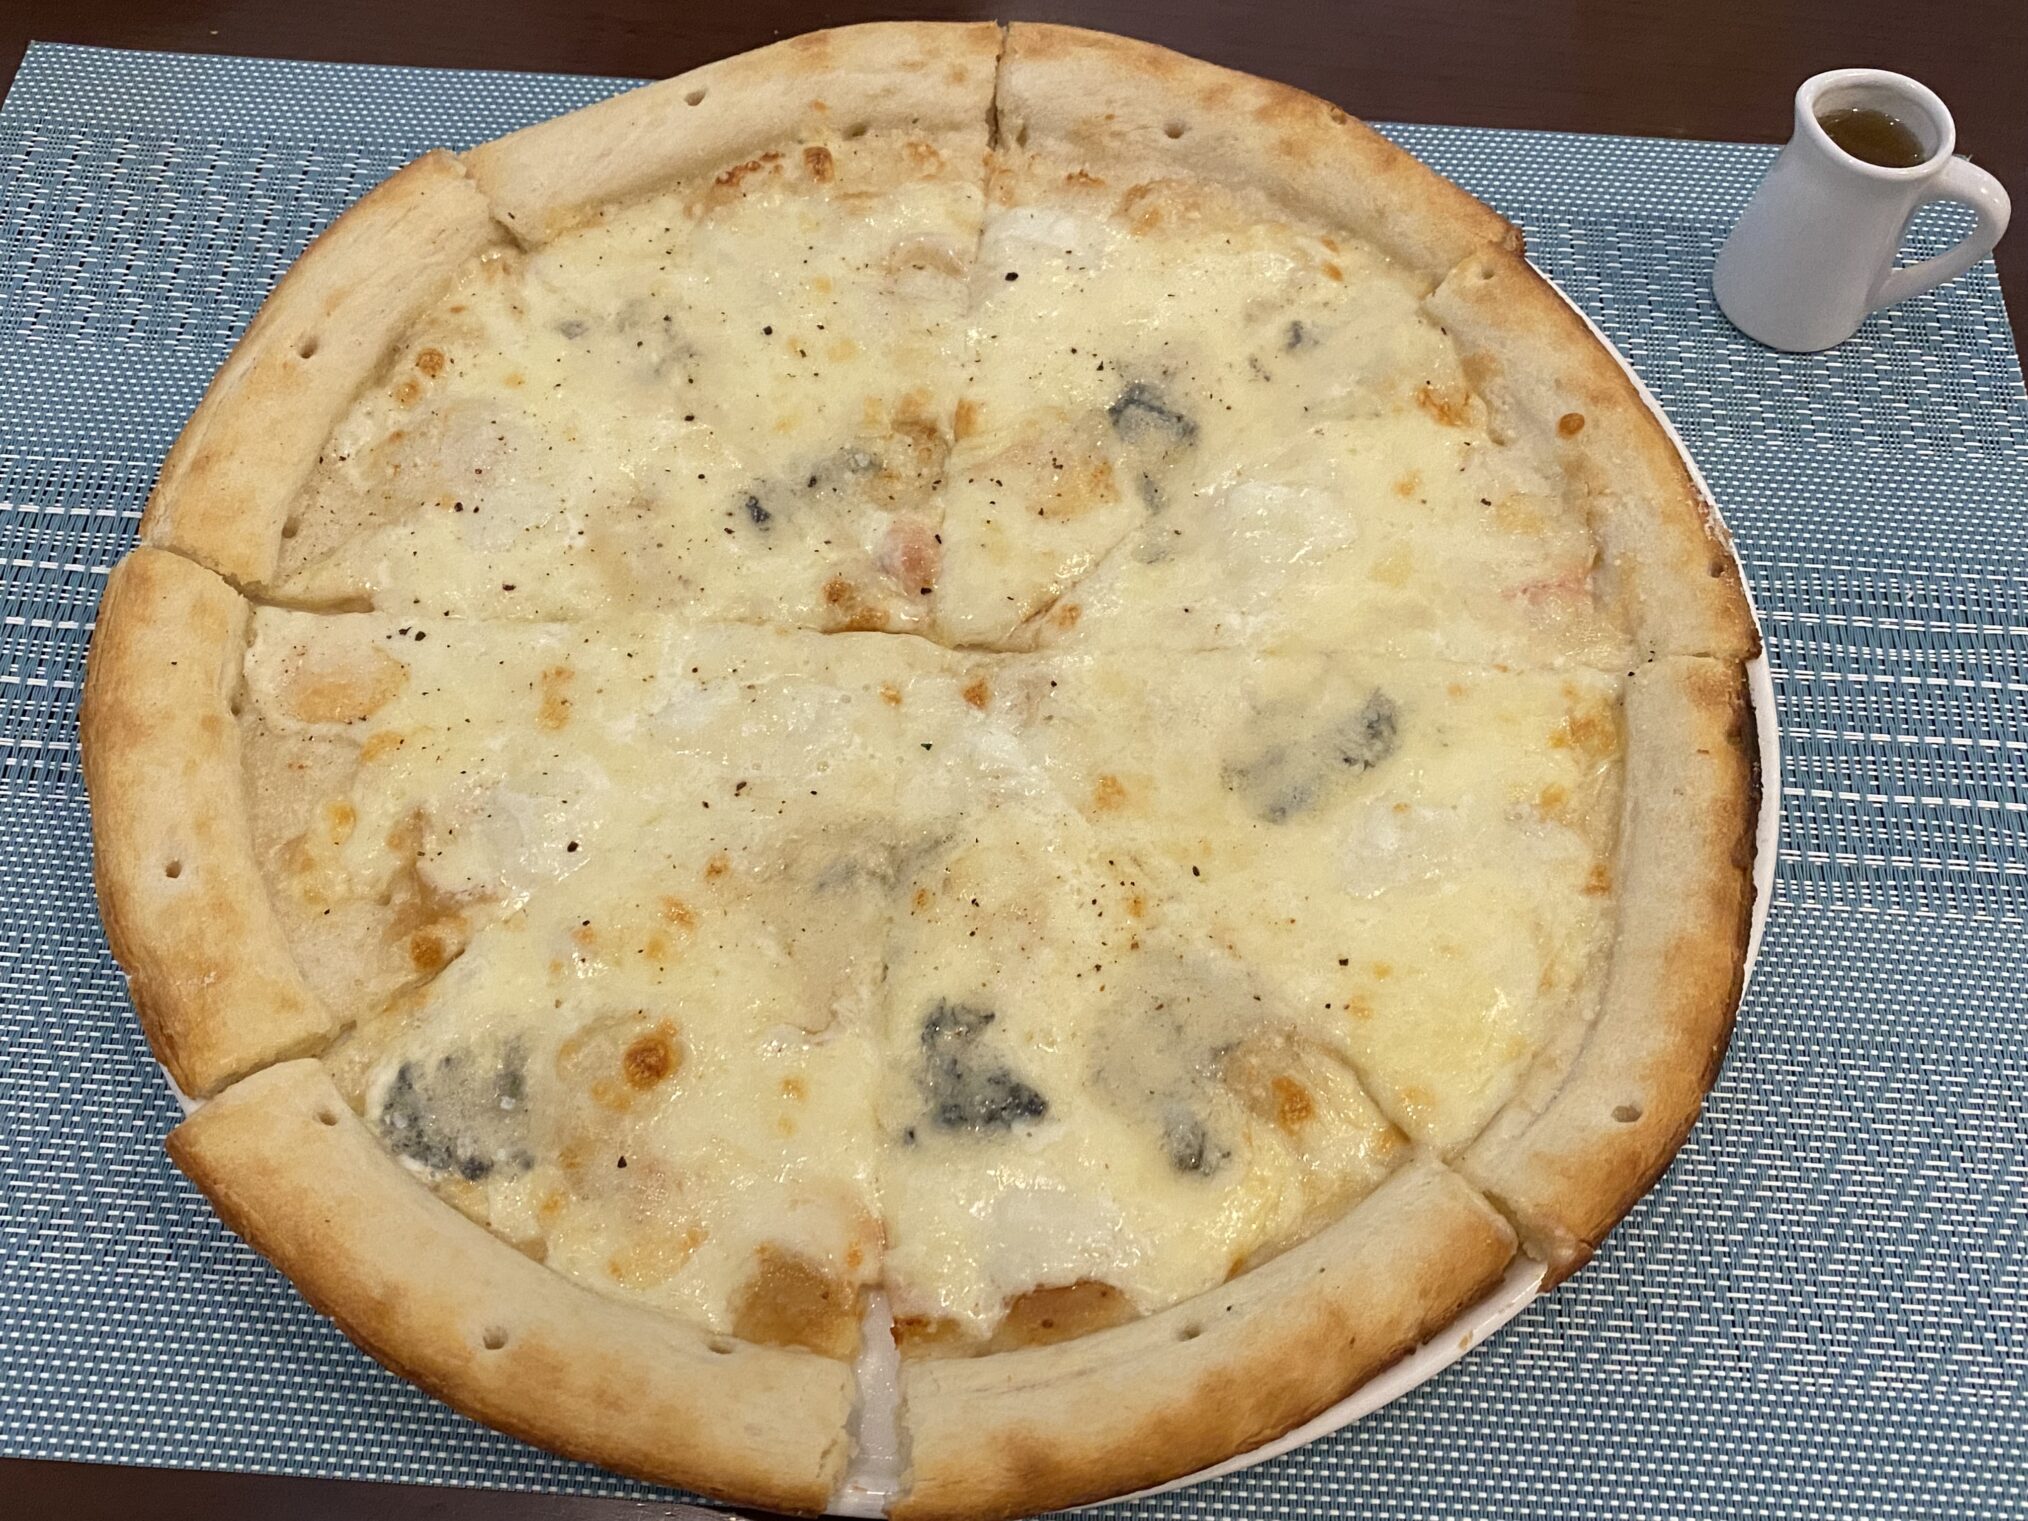 郡家町 クッチーナ ニノ 4種のチーズのピザ